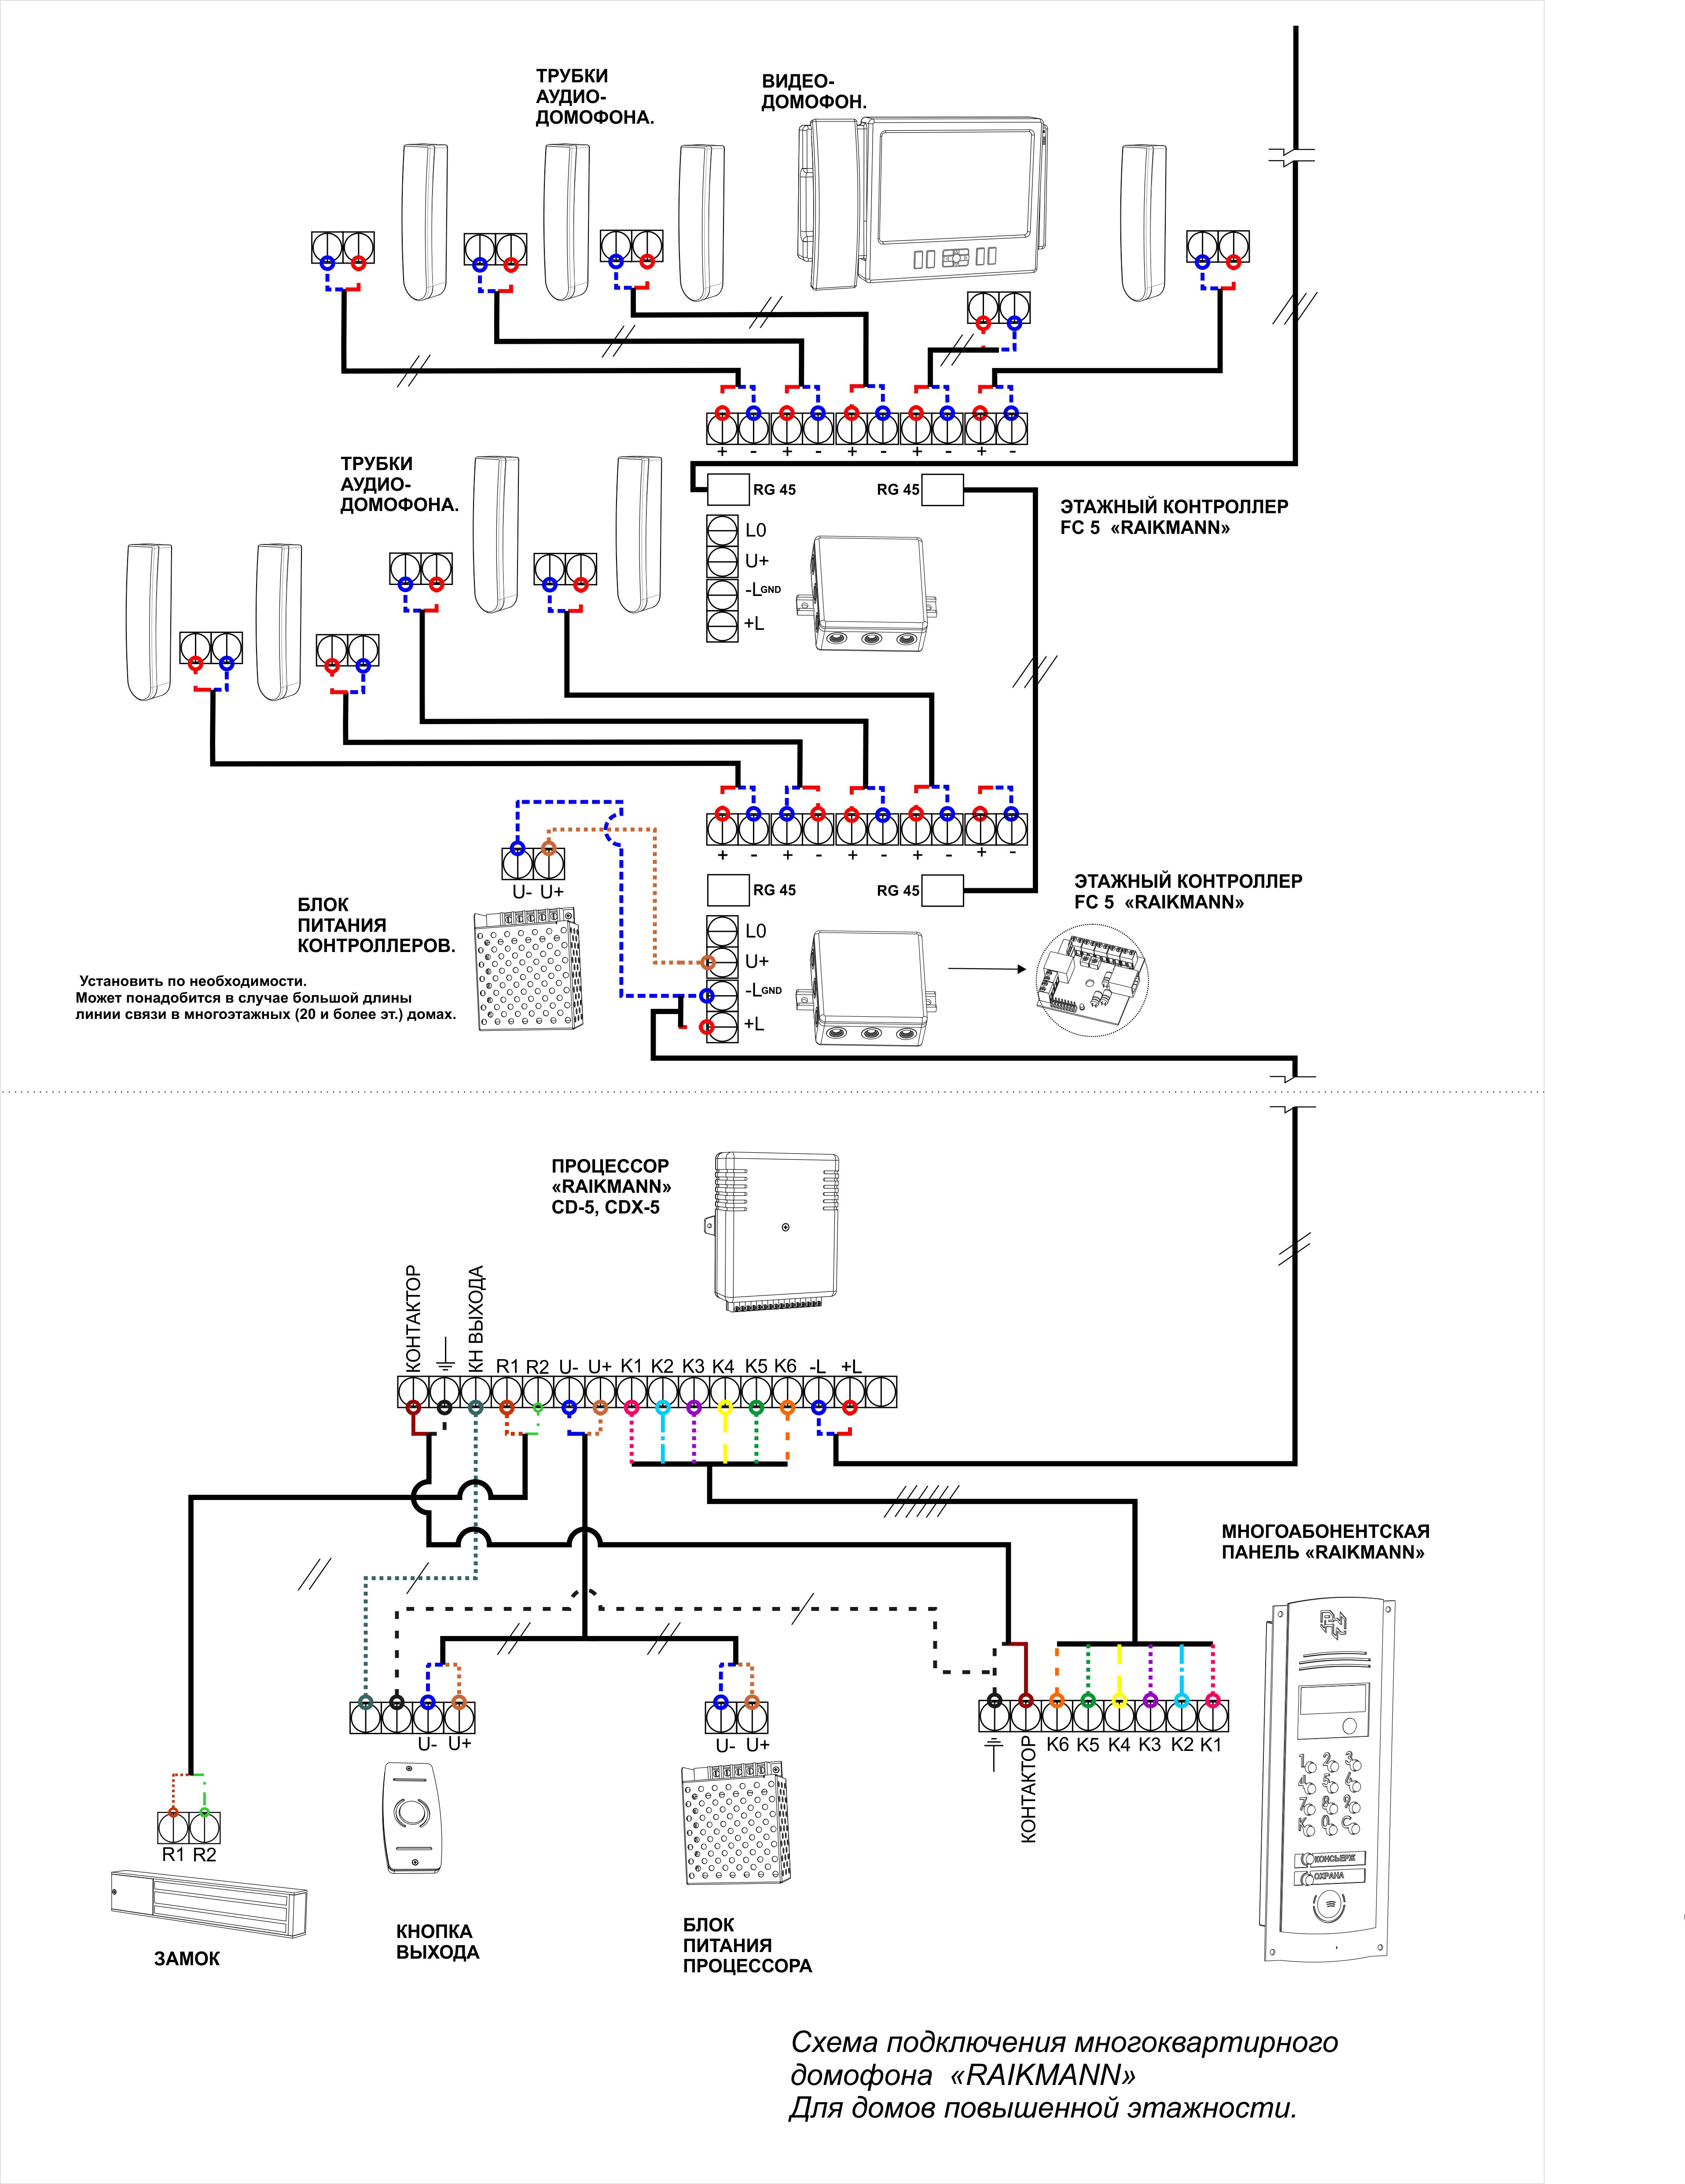 Схема подключения многокв. домофона повышенной эт (2).jpg